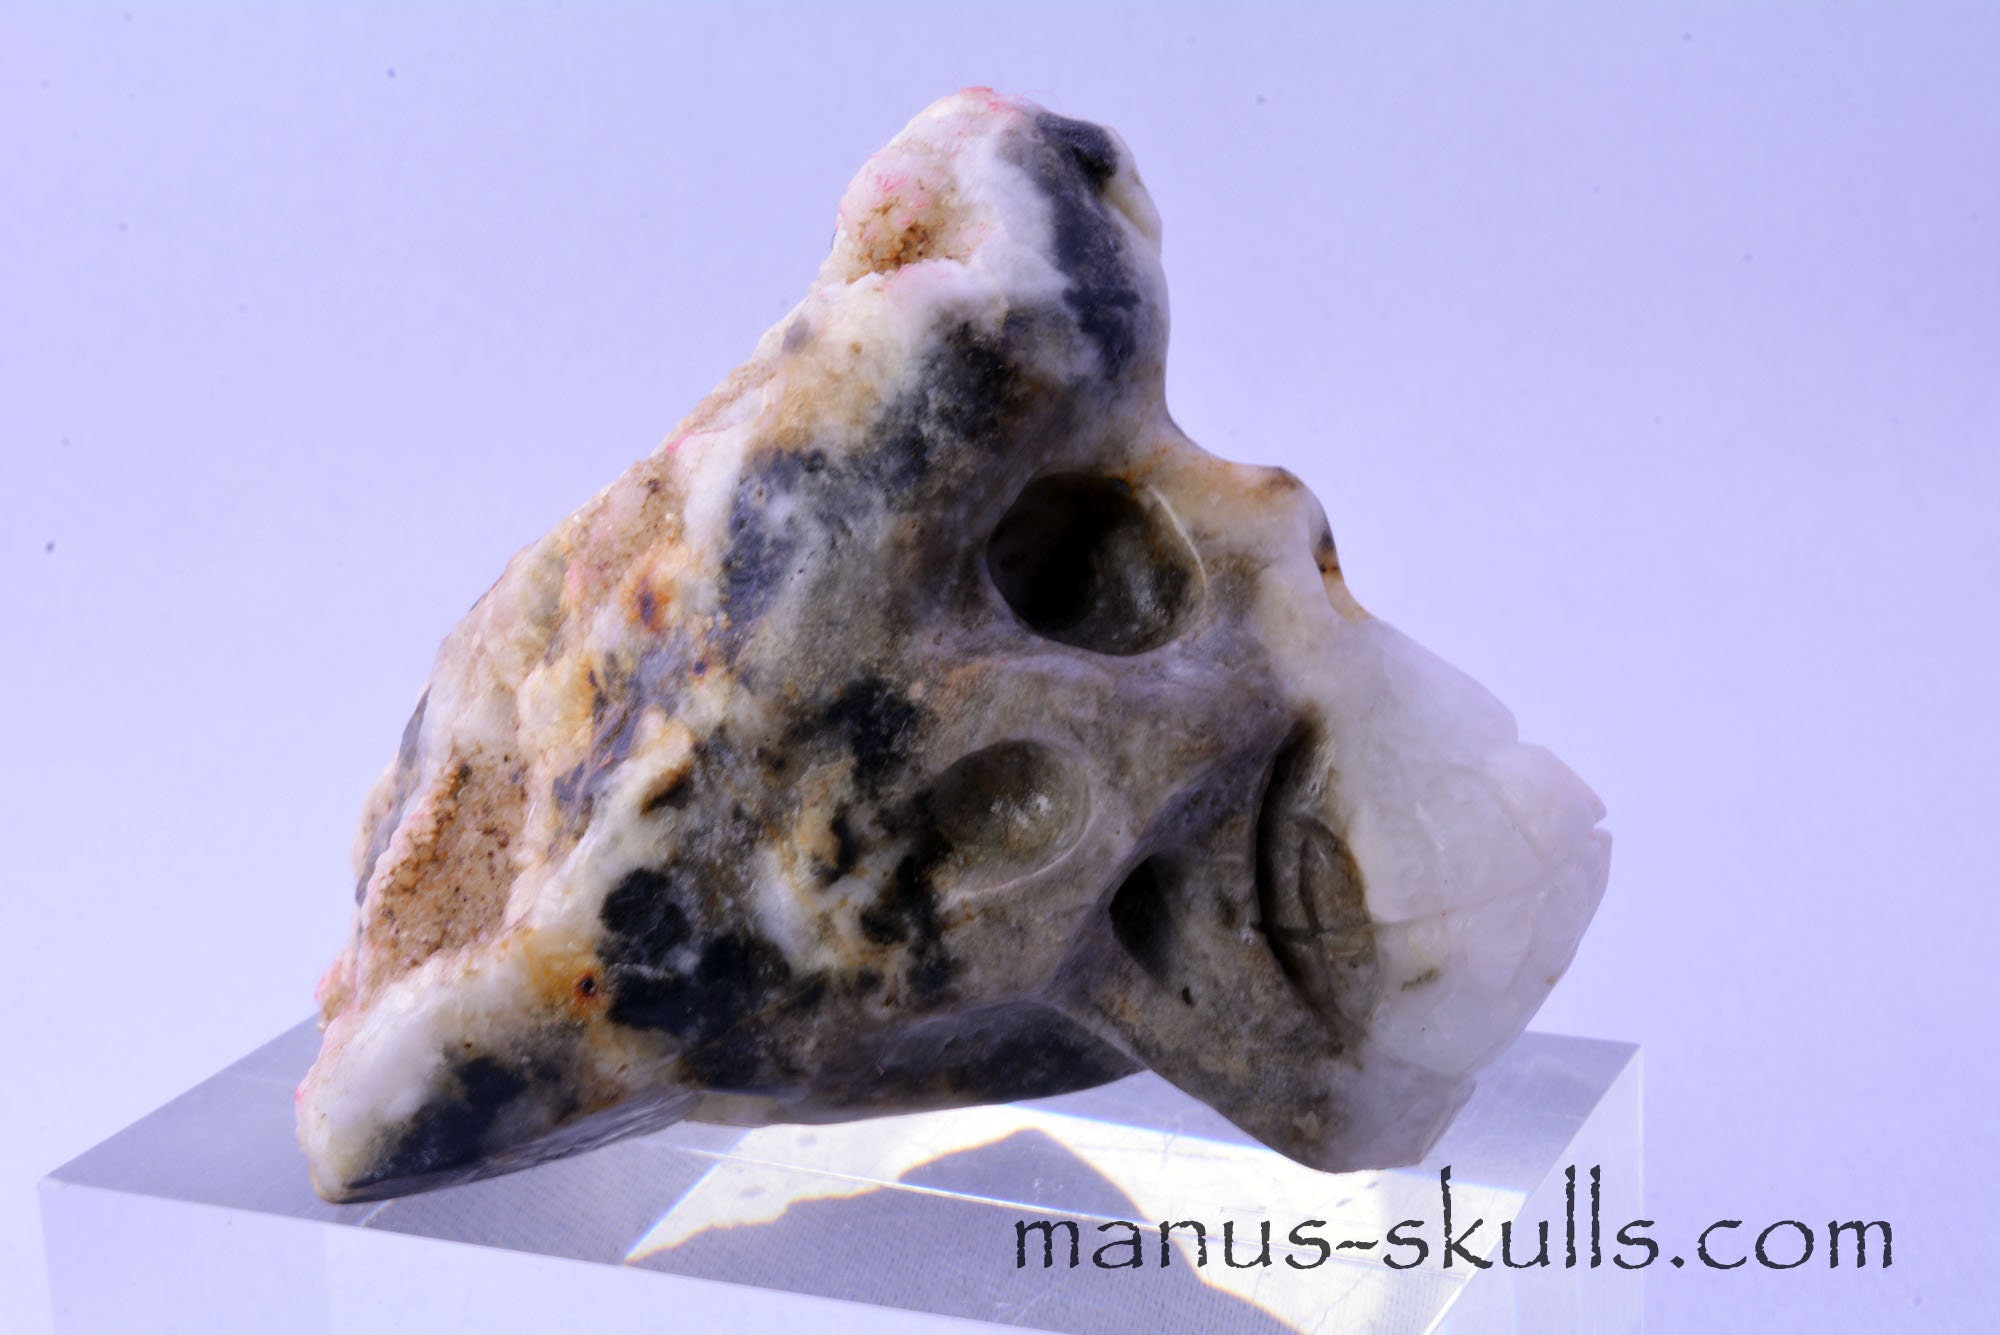 Crâne de cristal - l'estacle minéraux